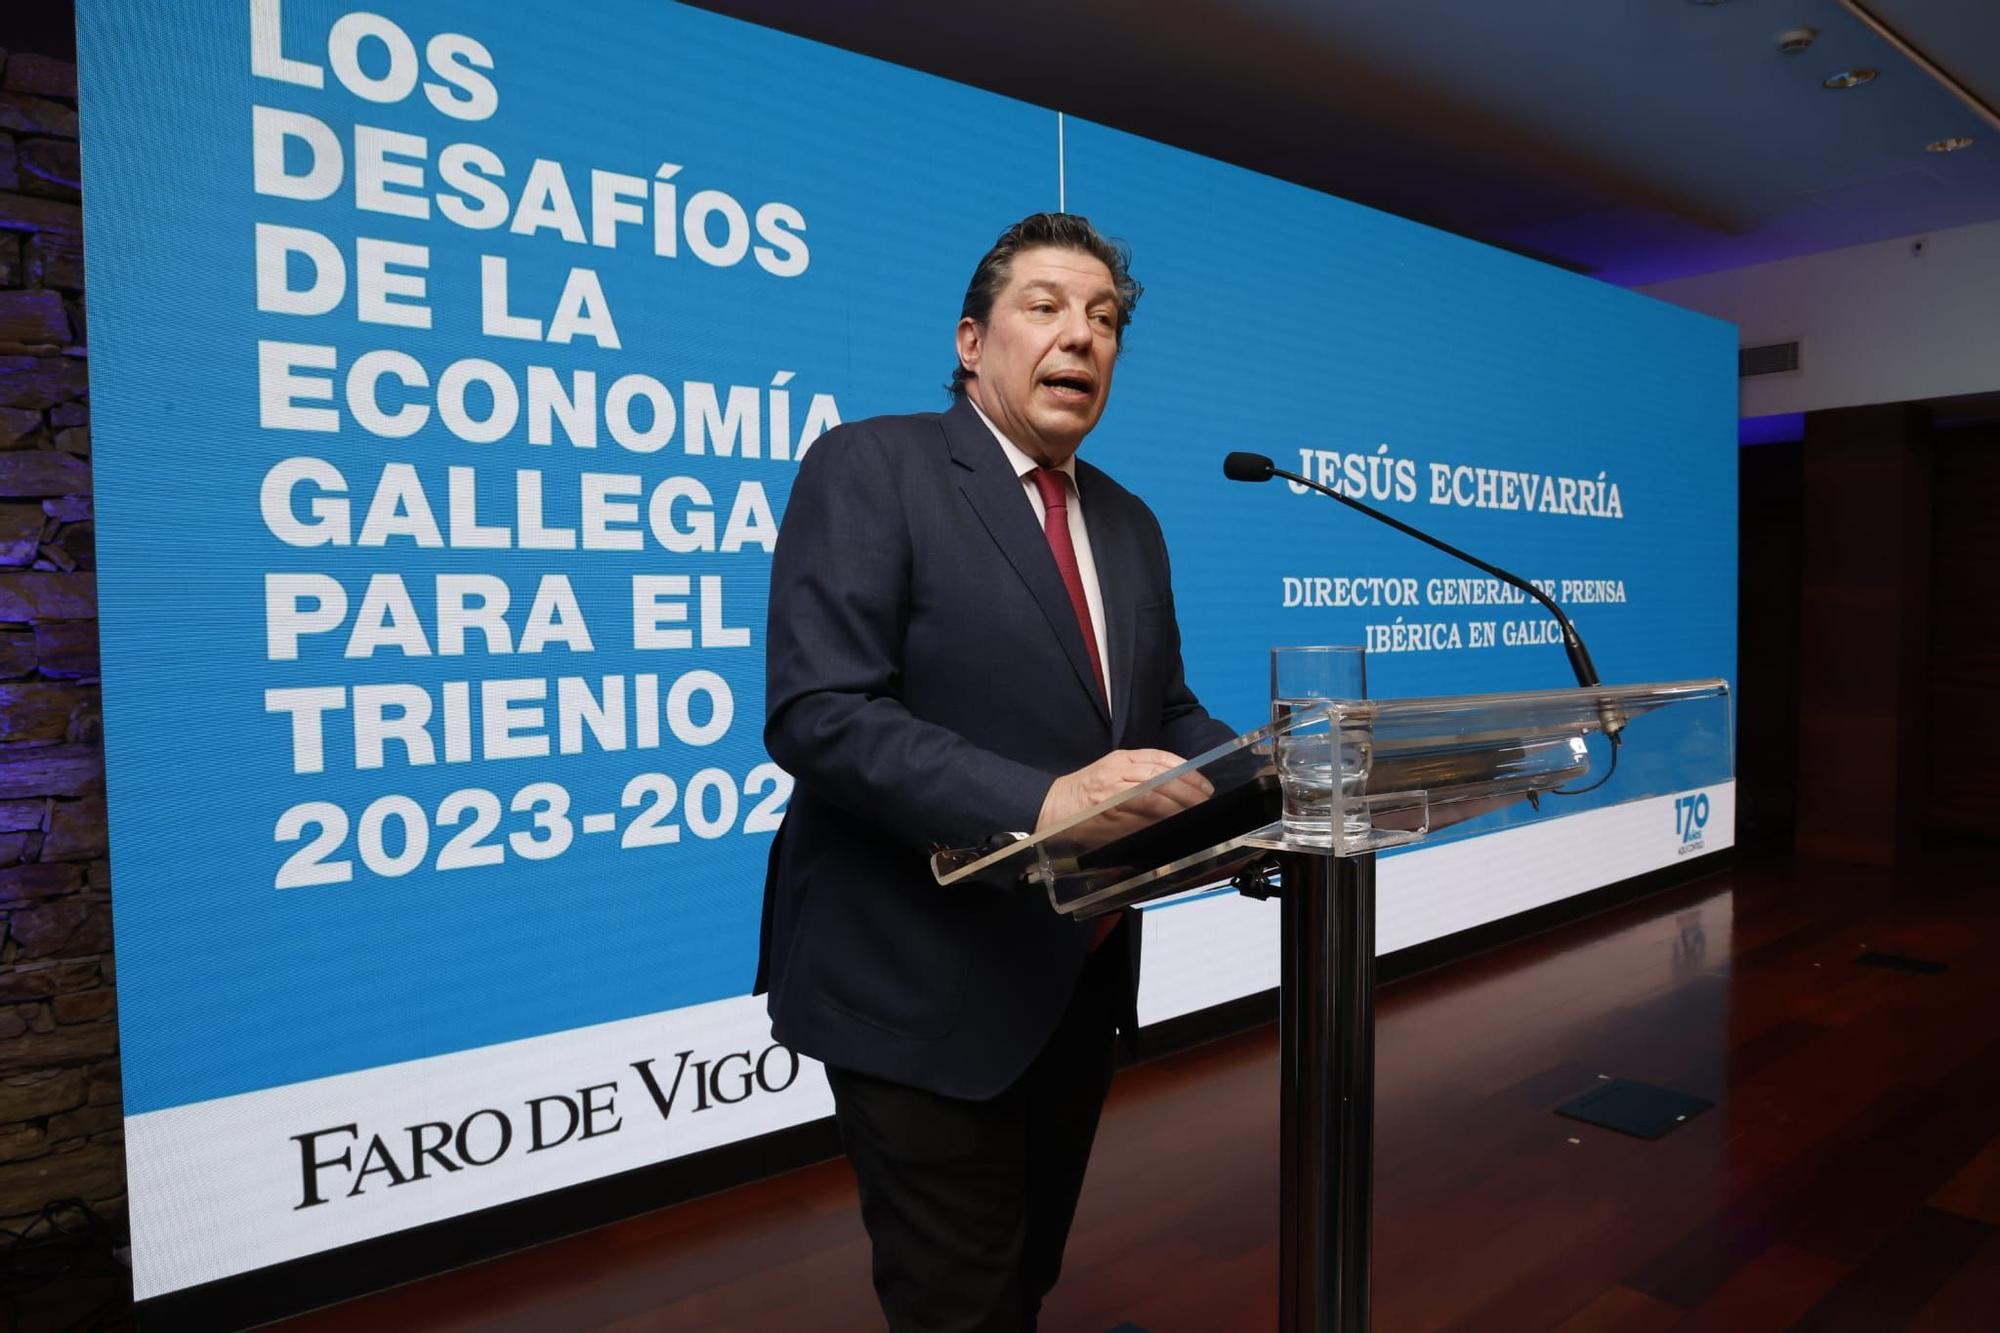 Los desafíos de la economía gallega, bajo análisis